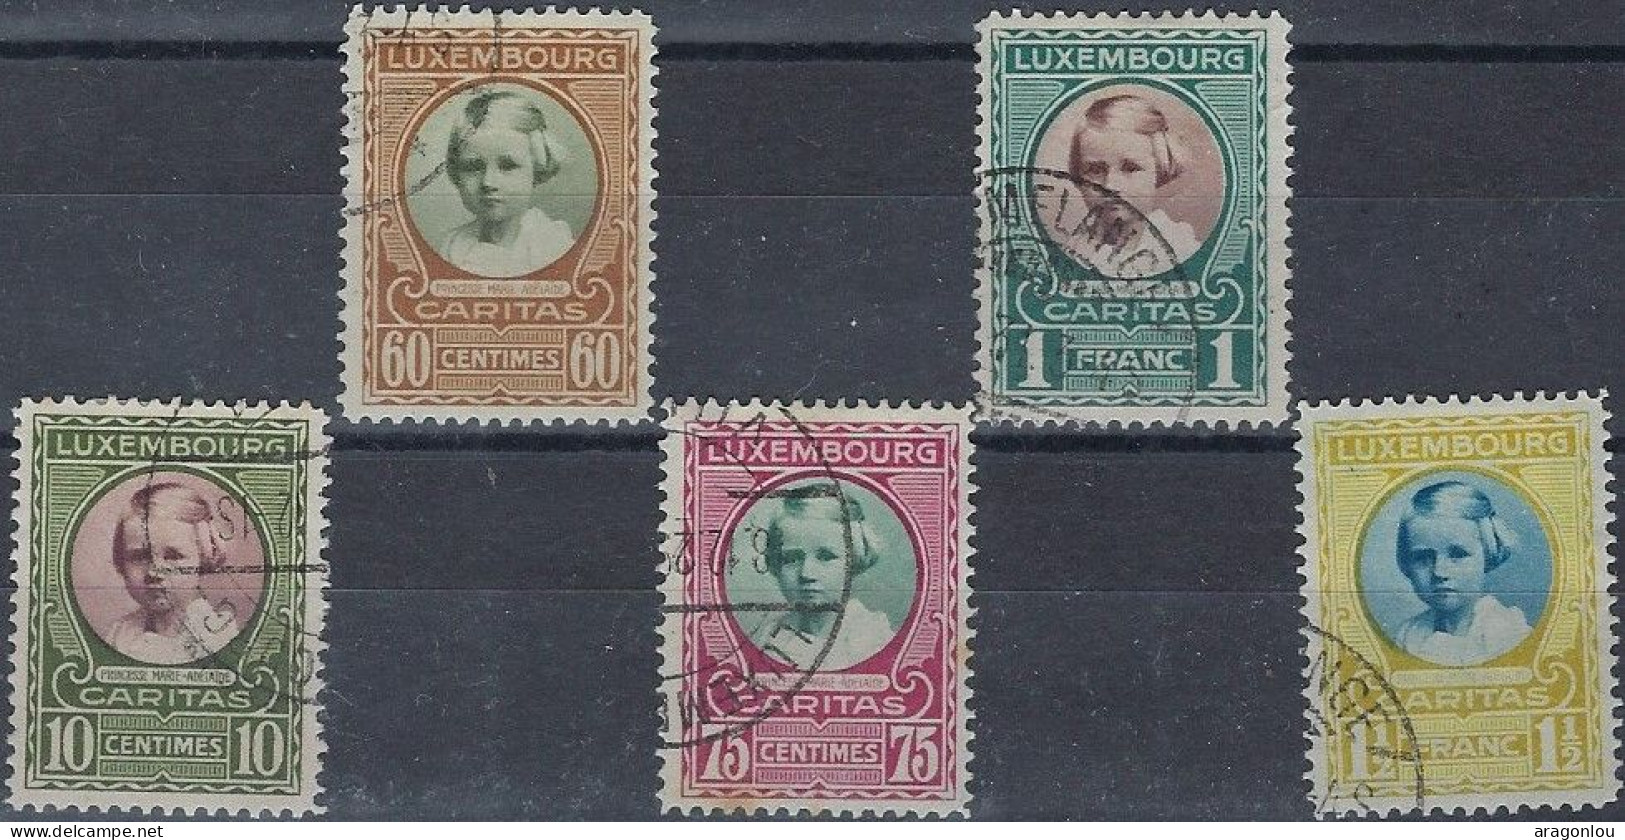 Luxembourg - Luxemburg -  Timbre  Série   1928   °   Marie - Adélaïde    VC. 60,- - Oblitérés